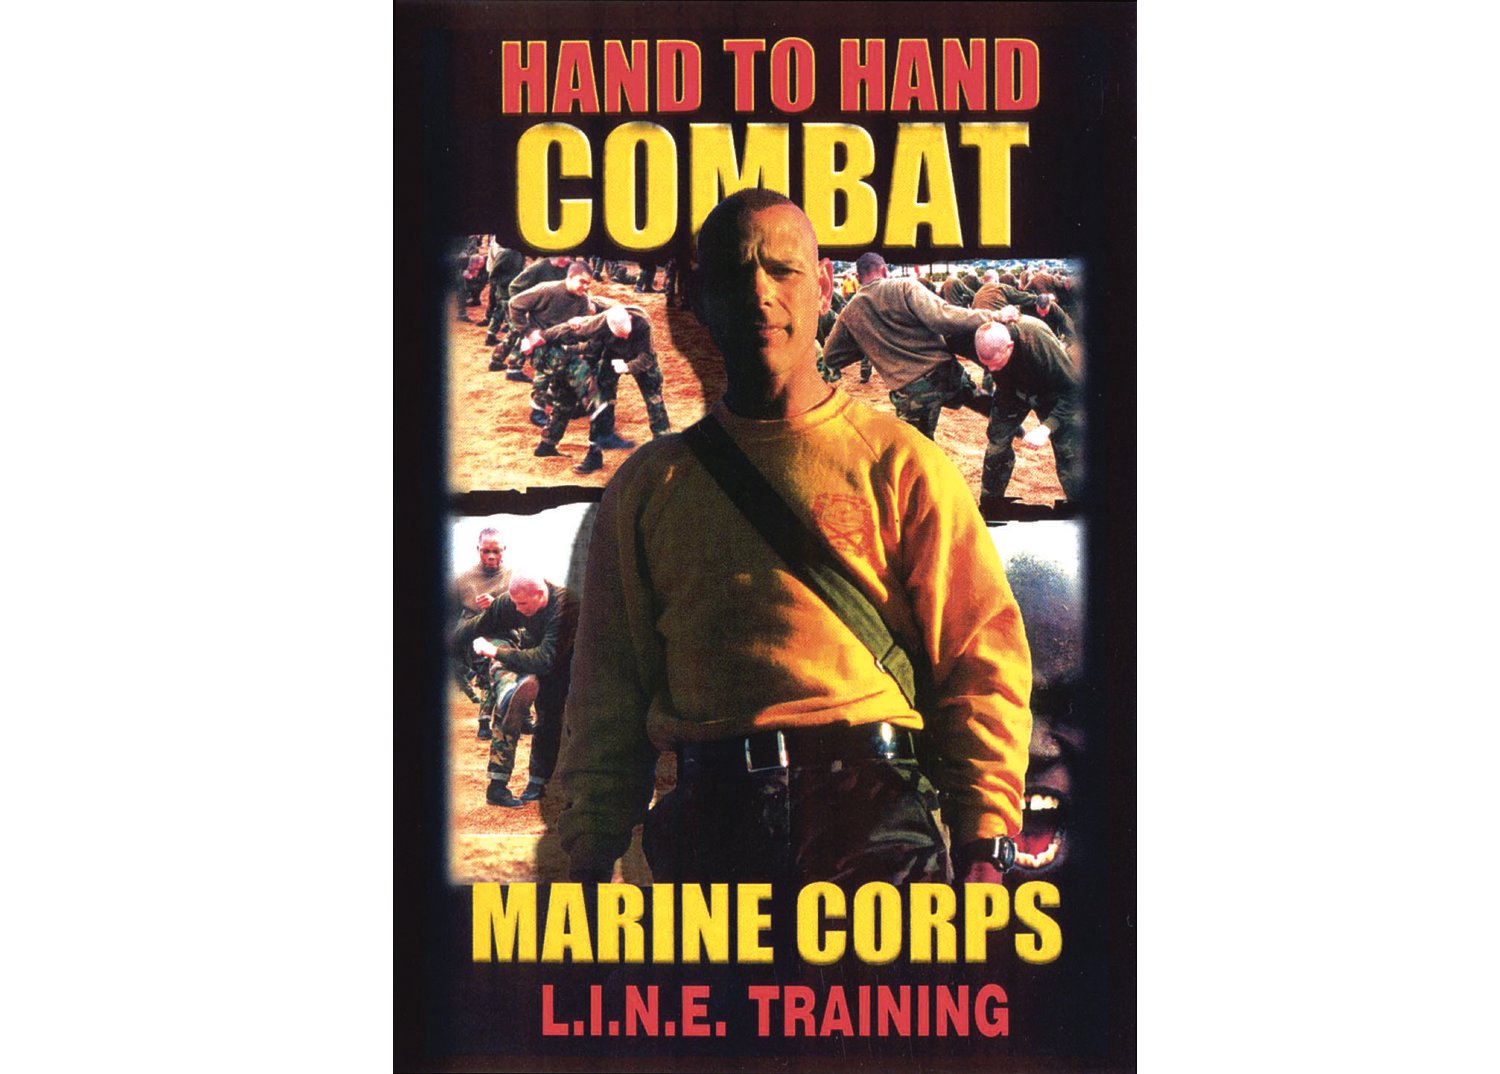 Marine Corps Hand To Hand Combat - DVD